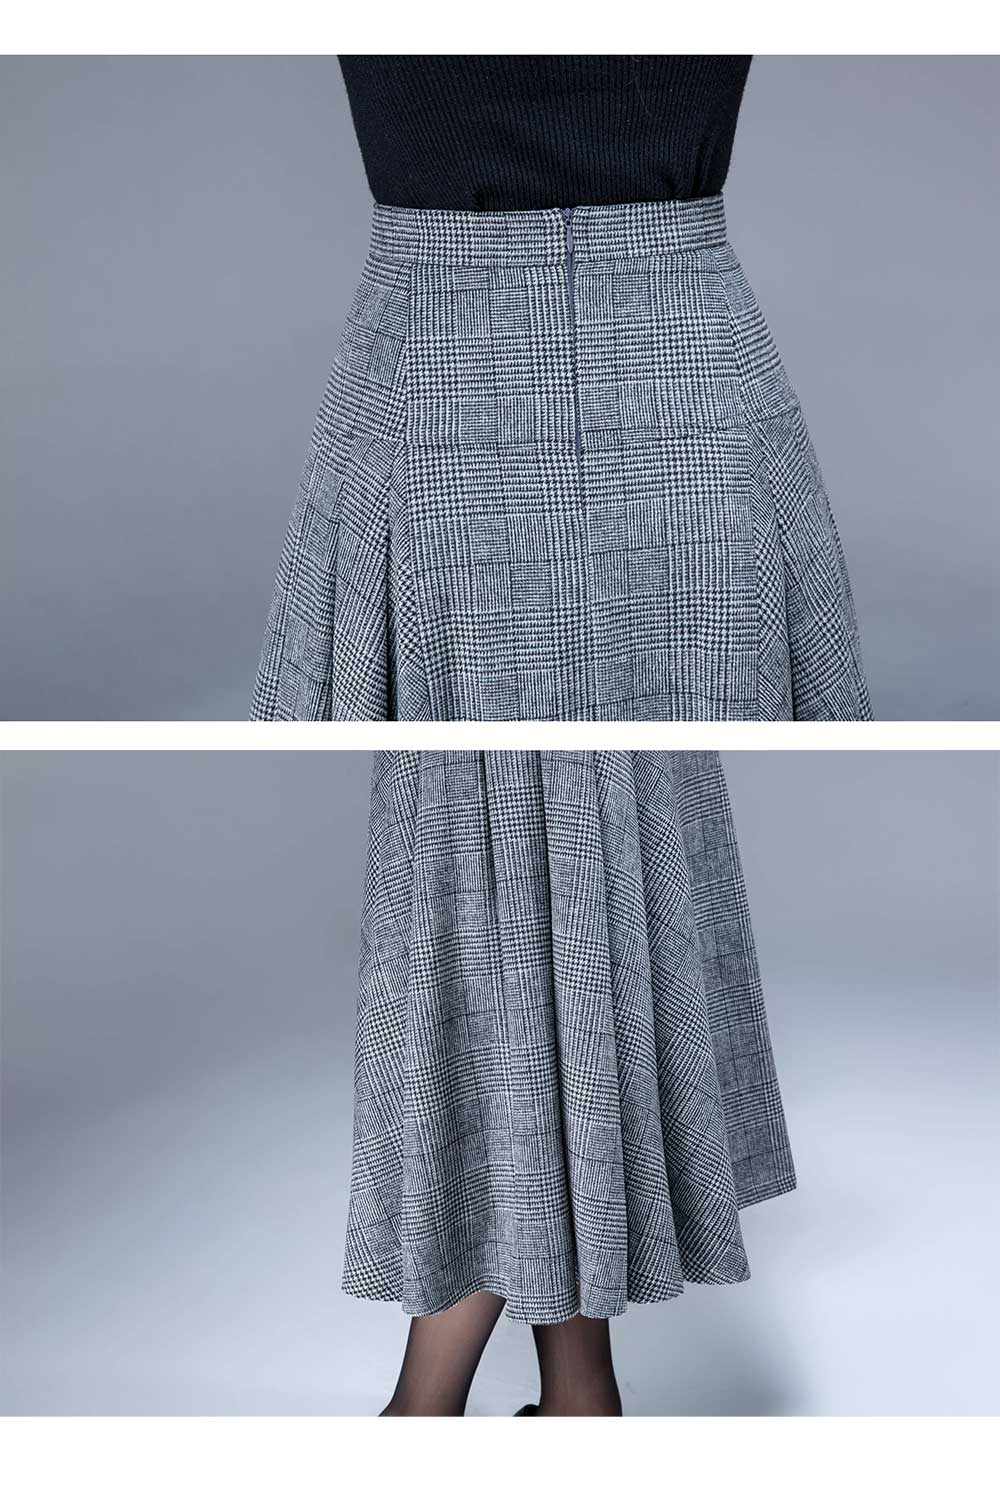 High waisted wool skirt, ladies pleated skirt 1794#